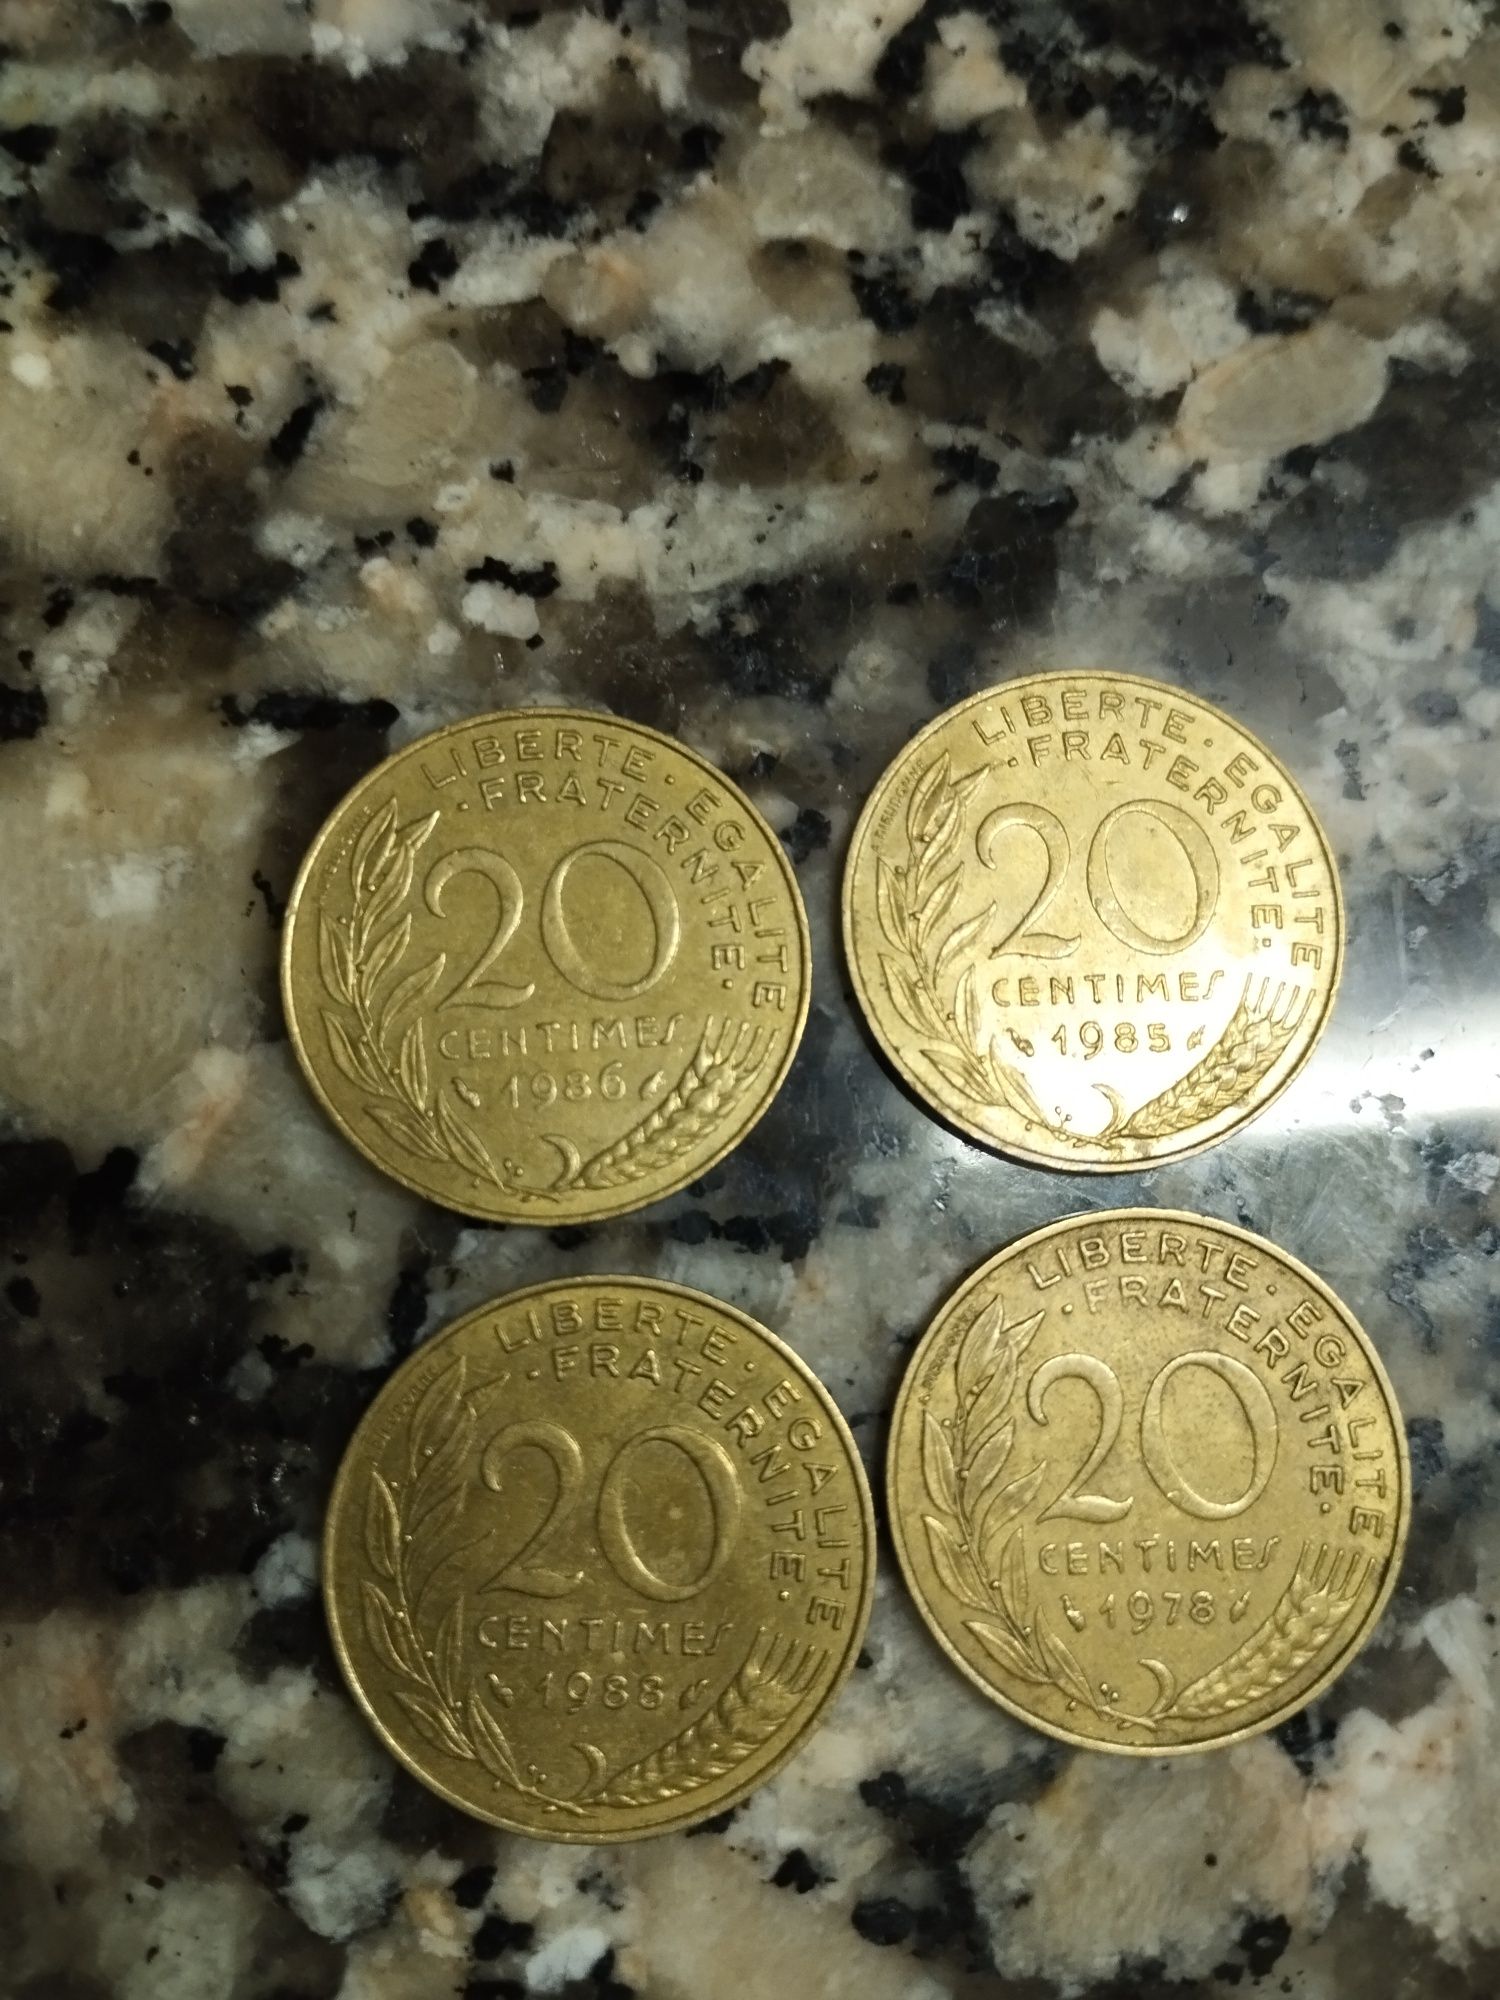 Vendo moedas antigas e raras.